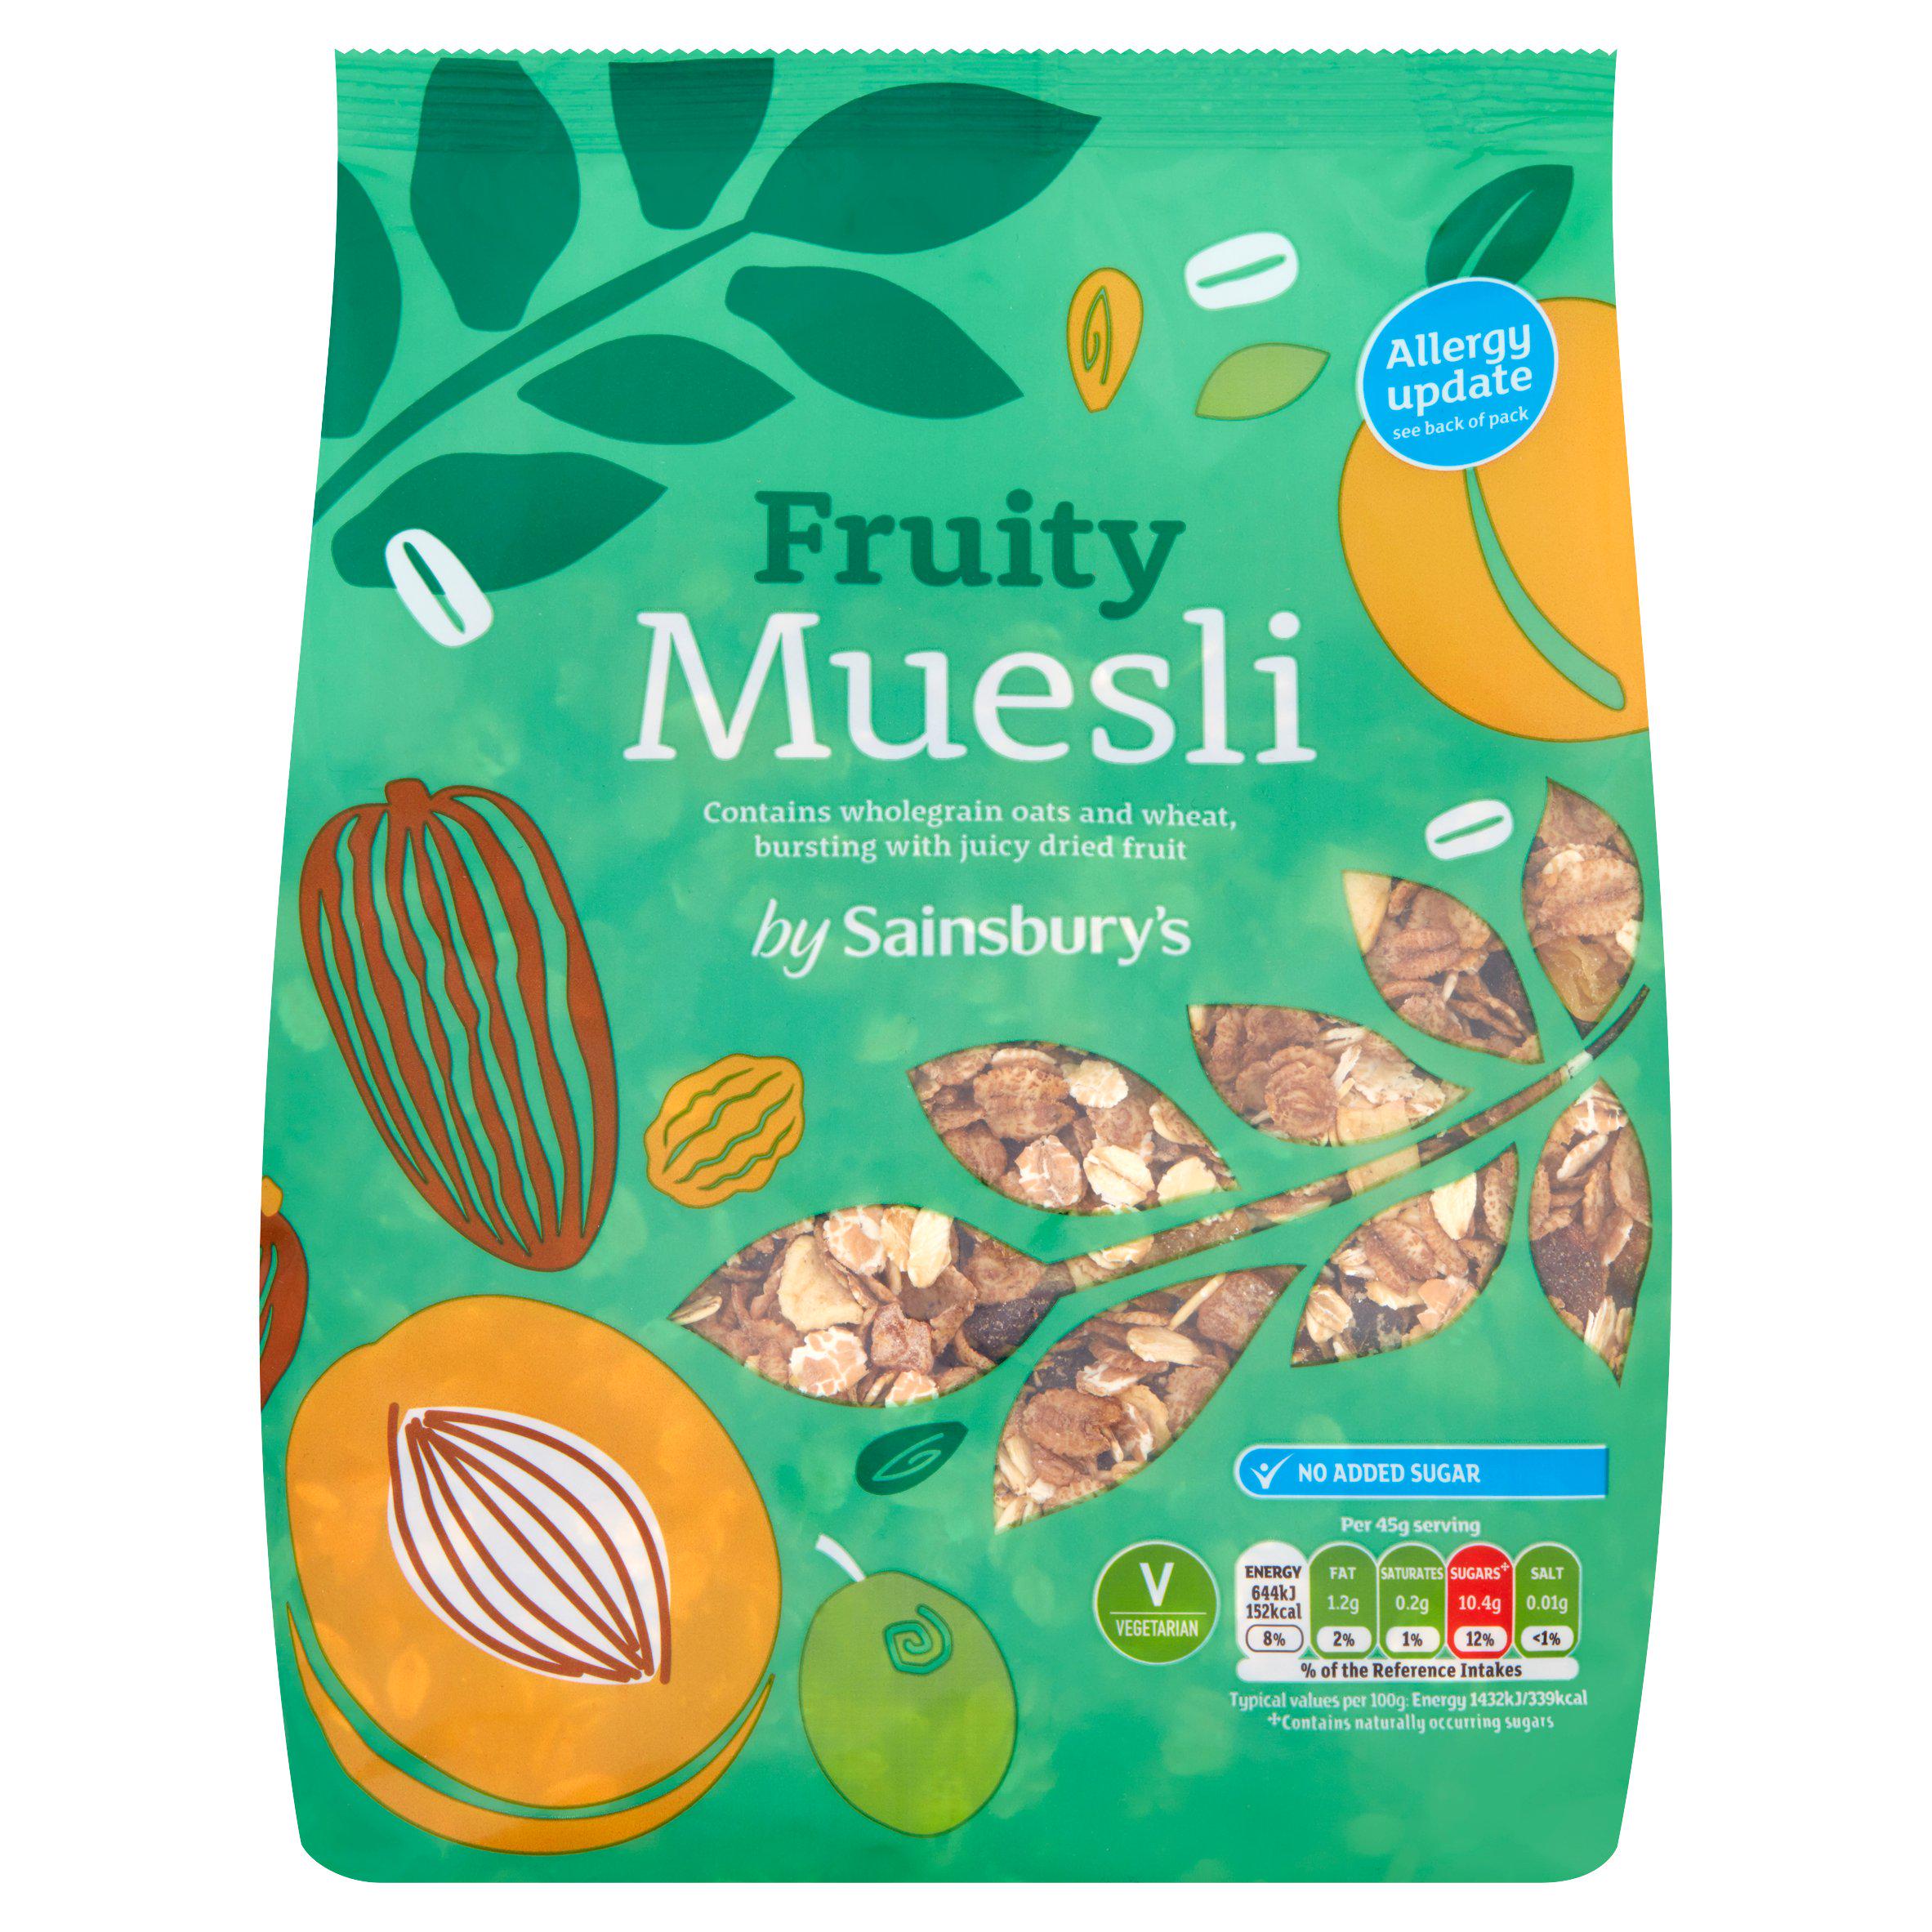 WSO - Sainsbury's Fruity Muesli 750g1x8